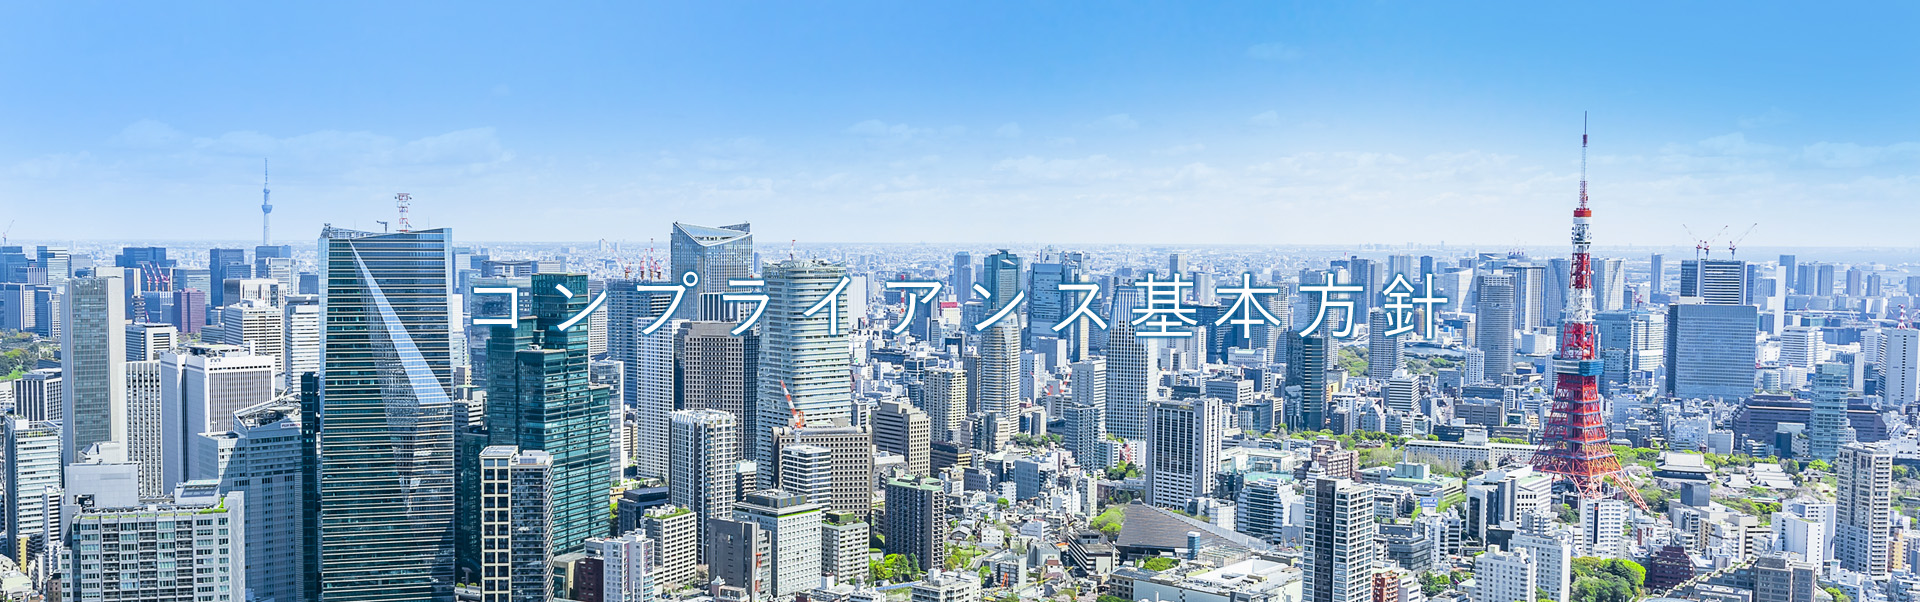 東京の空のイメージ画像